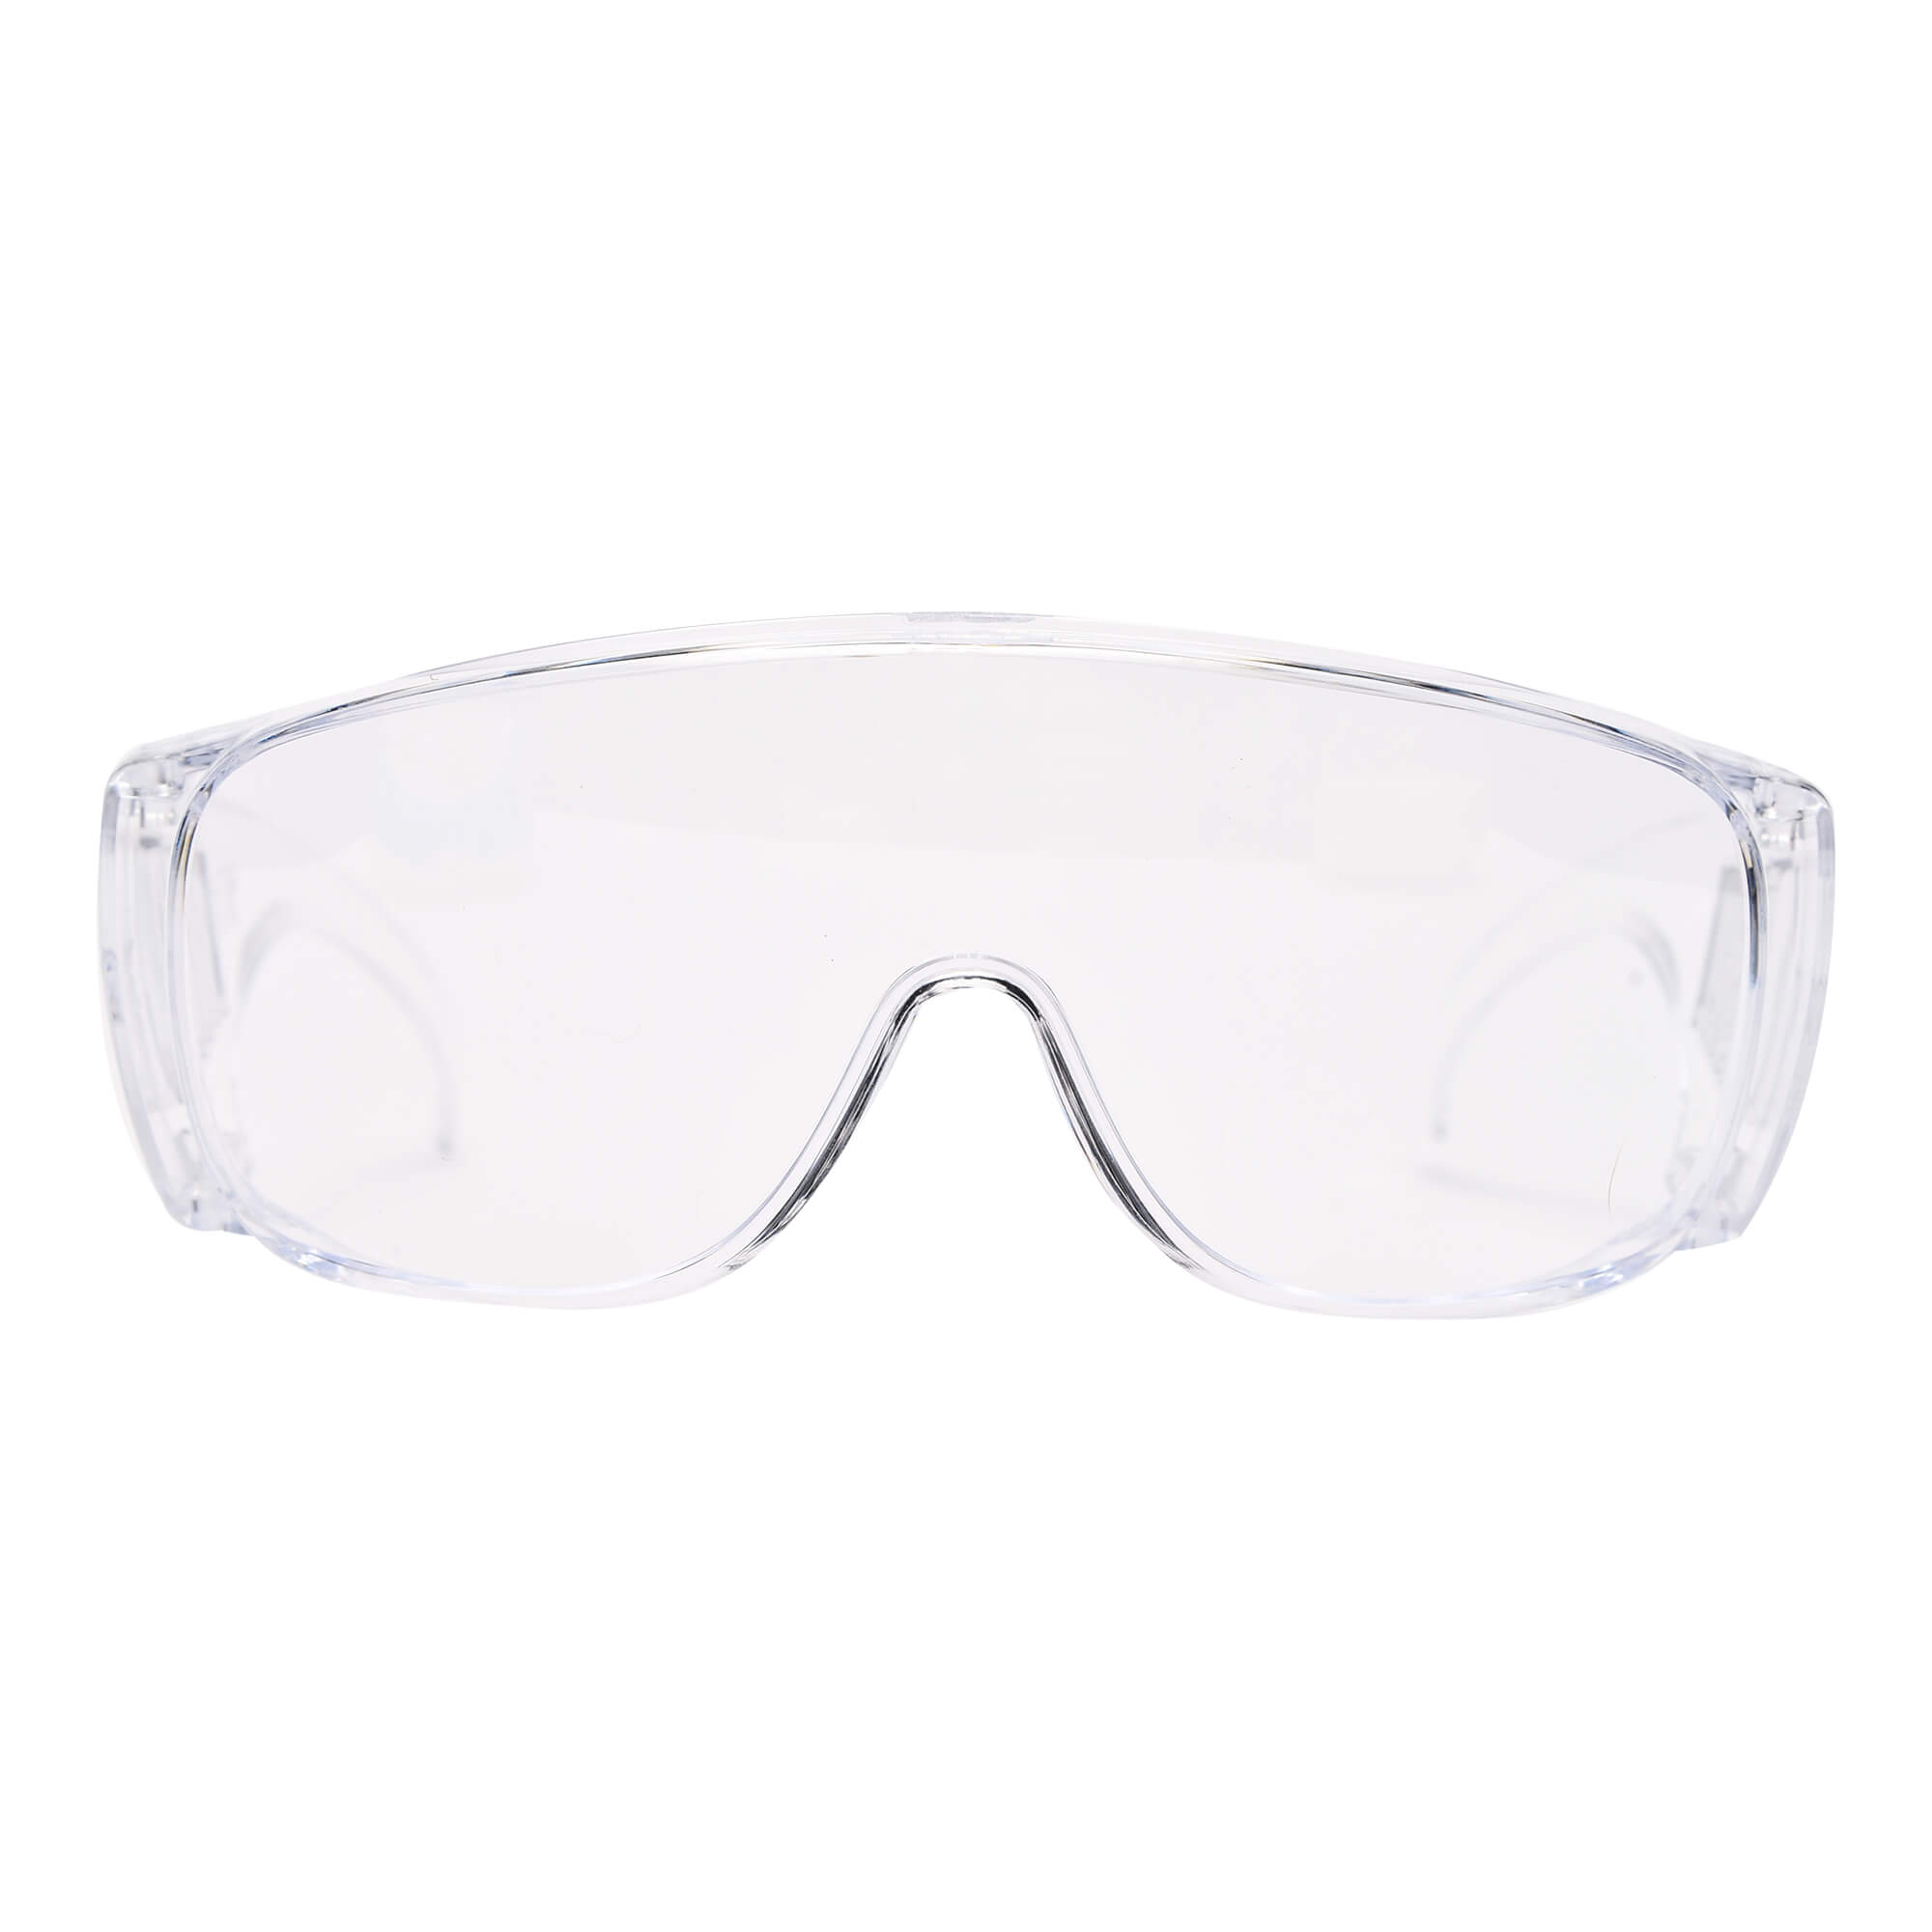 Durchsichtige Schutzbrille zum Schutz der Augen.